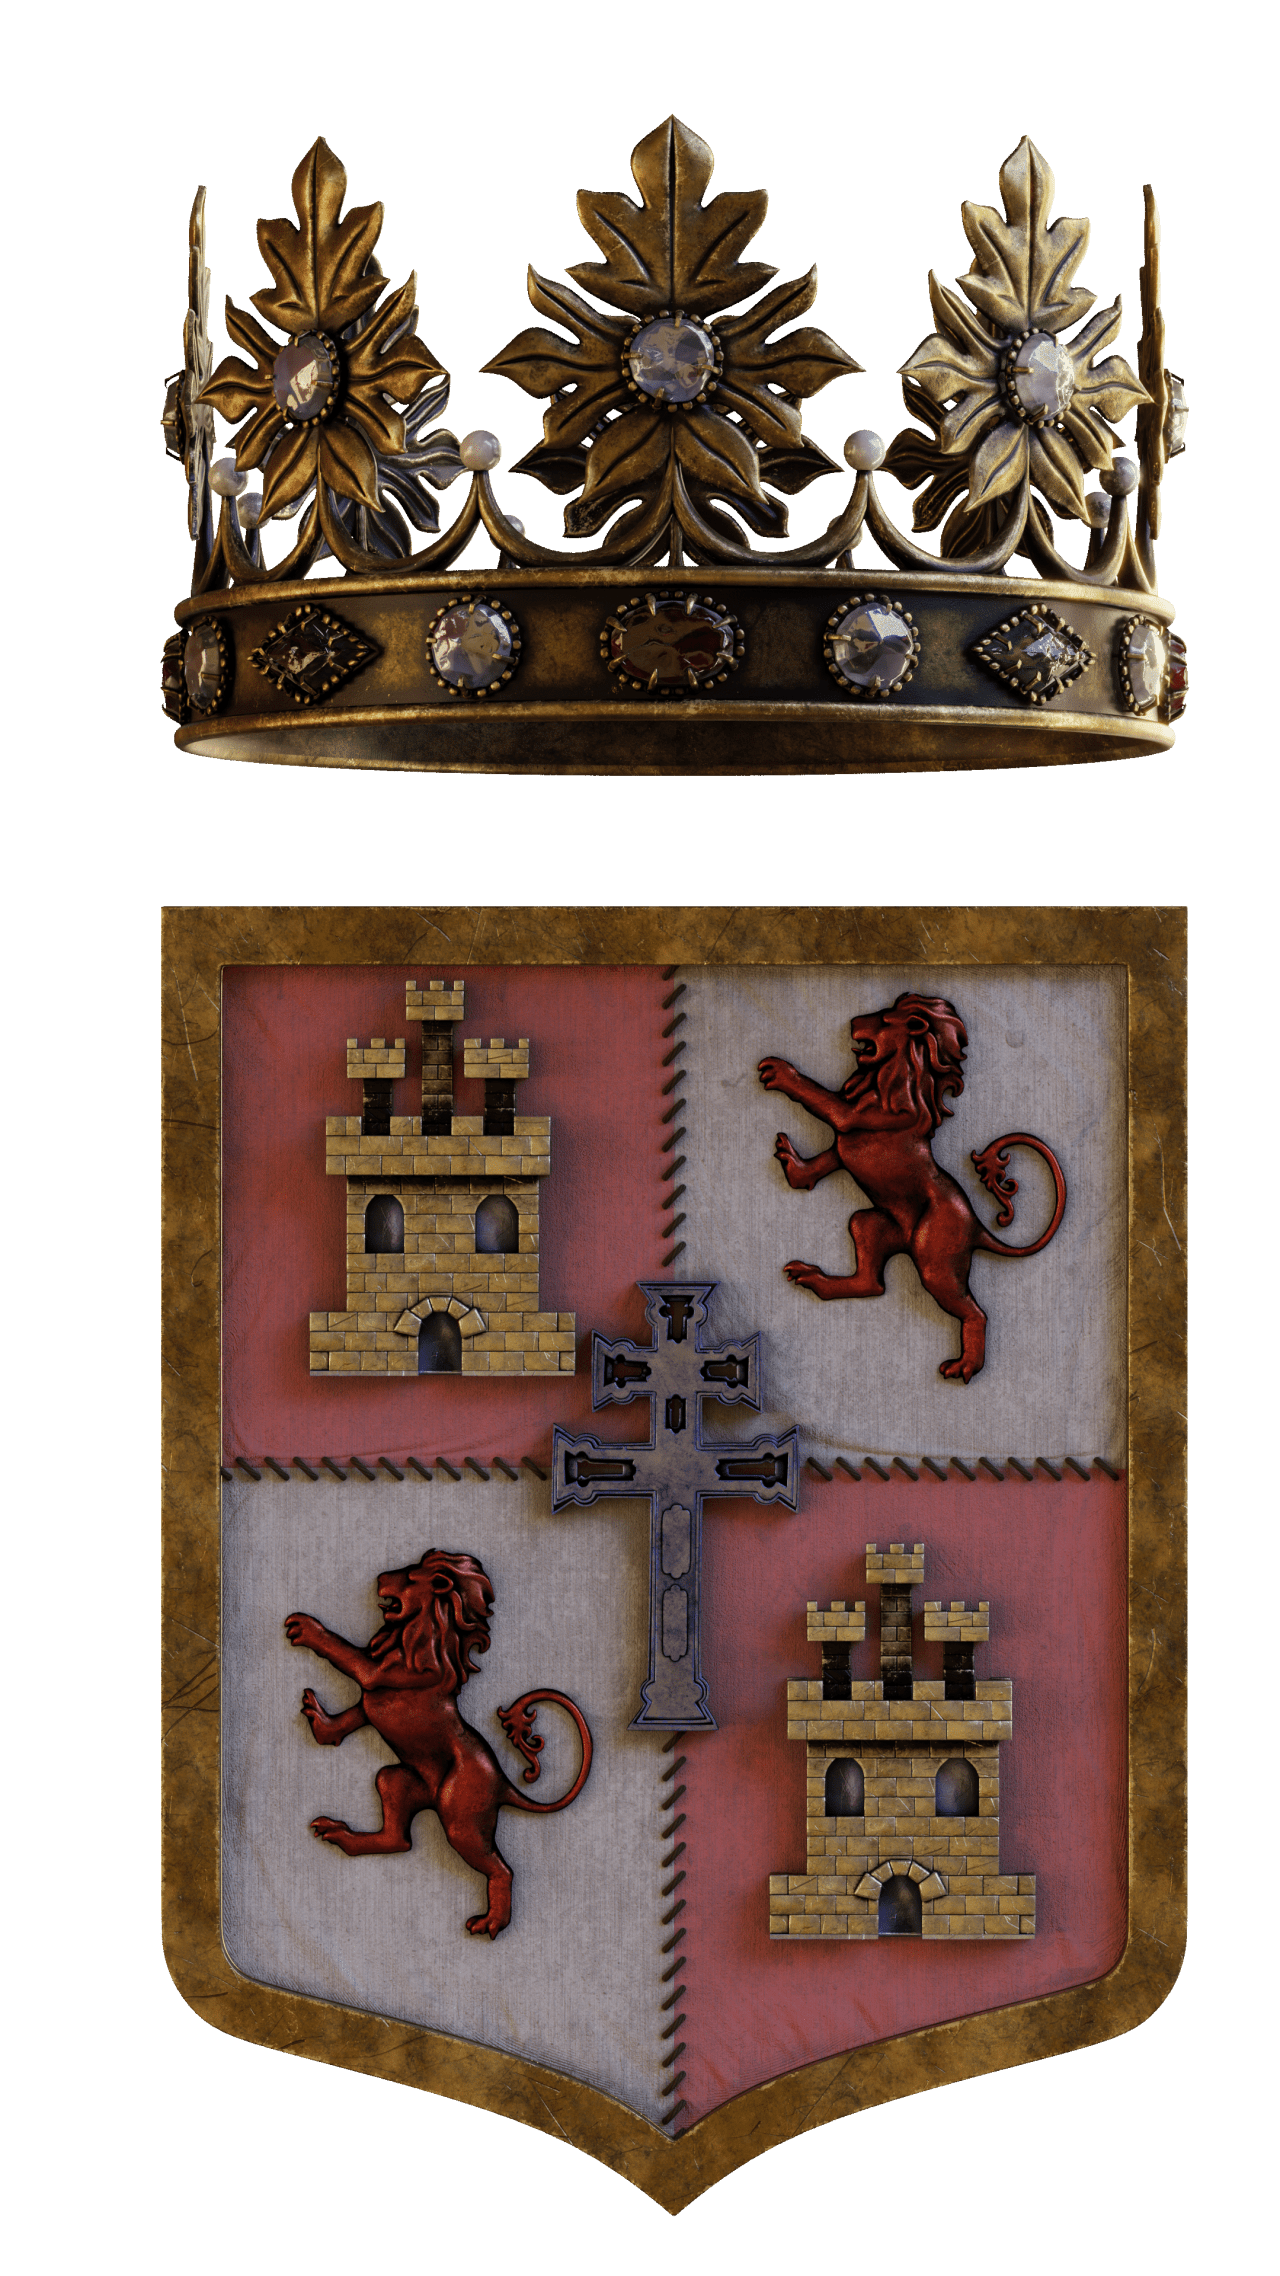 Escudo cristiano de las Fiestas de la Cruz de Caravaca con castillos, leones y la Cruz de Caravaca en el centro.